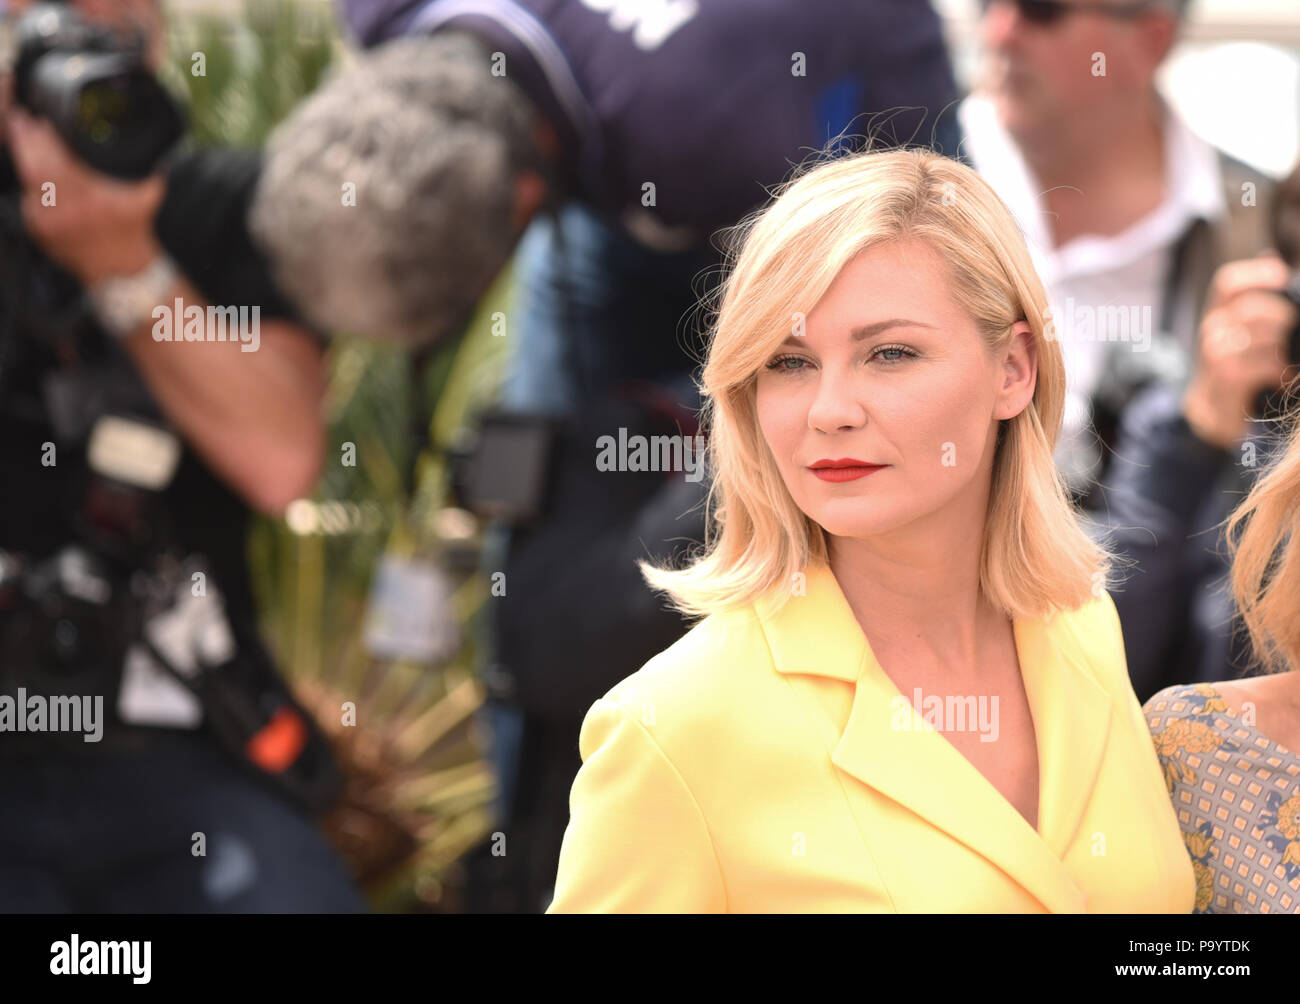 Mai 11, 2016 - Cannes, Frankreich: Kirsten Dunst besucht die Jury photocall während des 69. Filmfestival in Cannes. Kirsten Dunst lors du 69eme Festival de Cannes. *** Frankreich/KEINE VERKÄUFE IN DEN FRANZÖSISCHEN MEDIEN *** Stockfoto